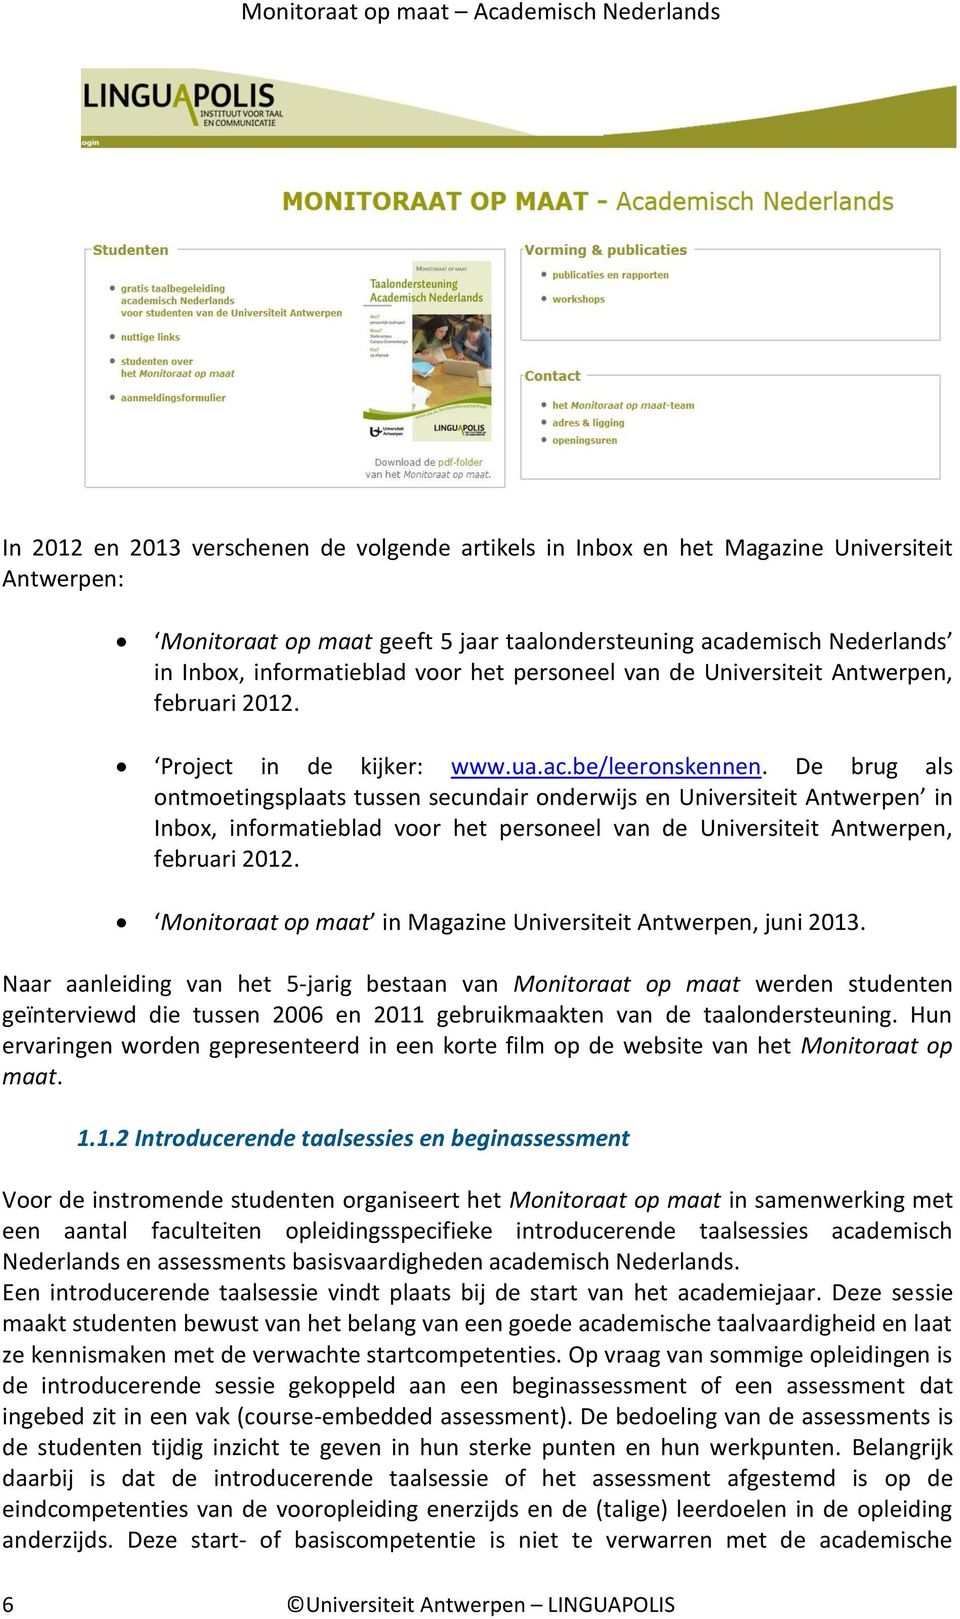 De brug als ontmoetingsplaats tussen secundair onderwijs en Universiteit Antwerpen in Inbox, informatieblad voor het personeel van de Universiteit Antwerpen, februari 2012.